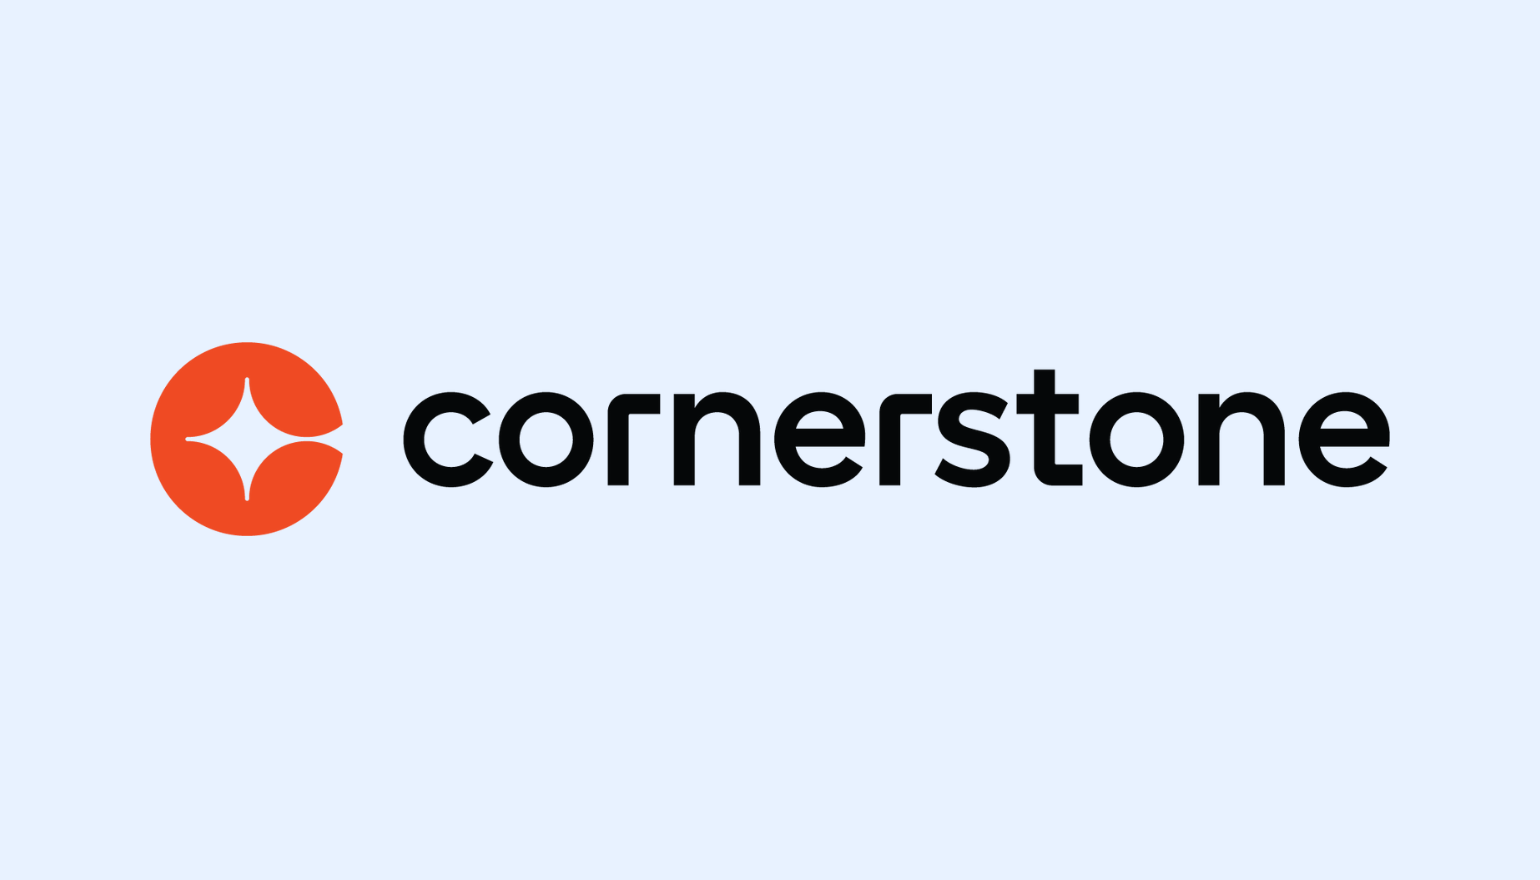 Cornerstone Integration